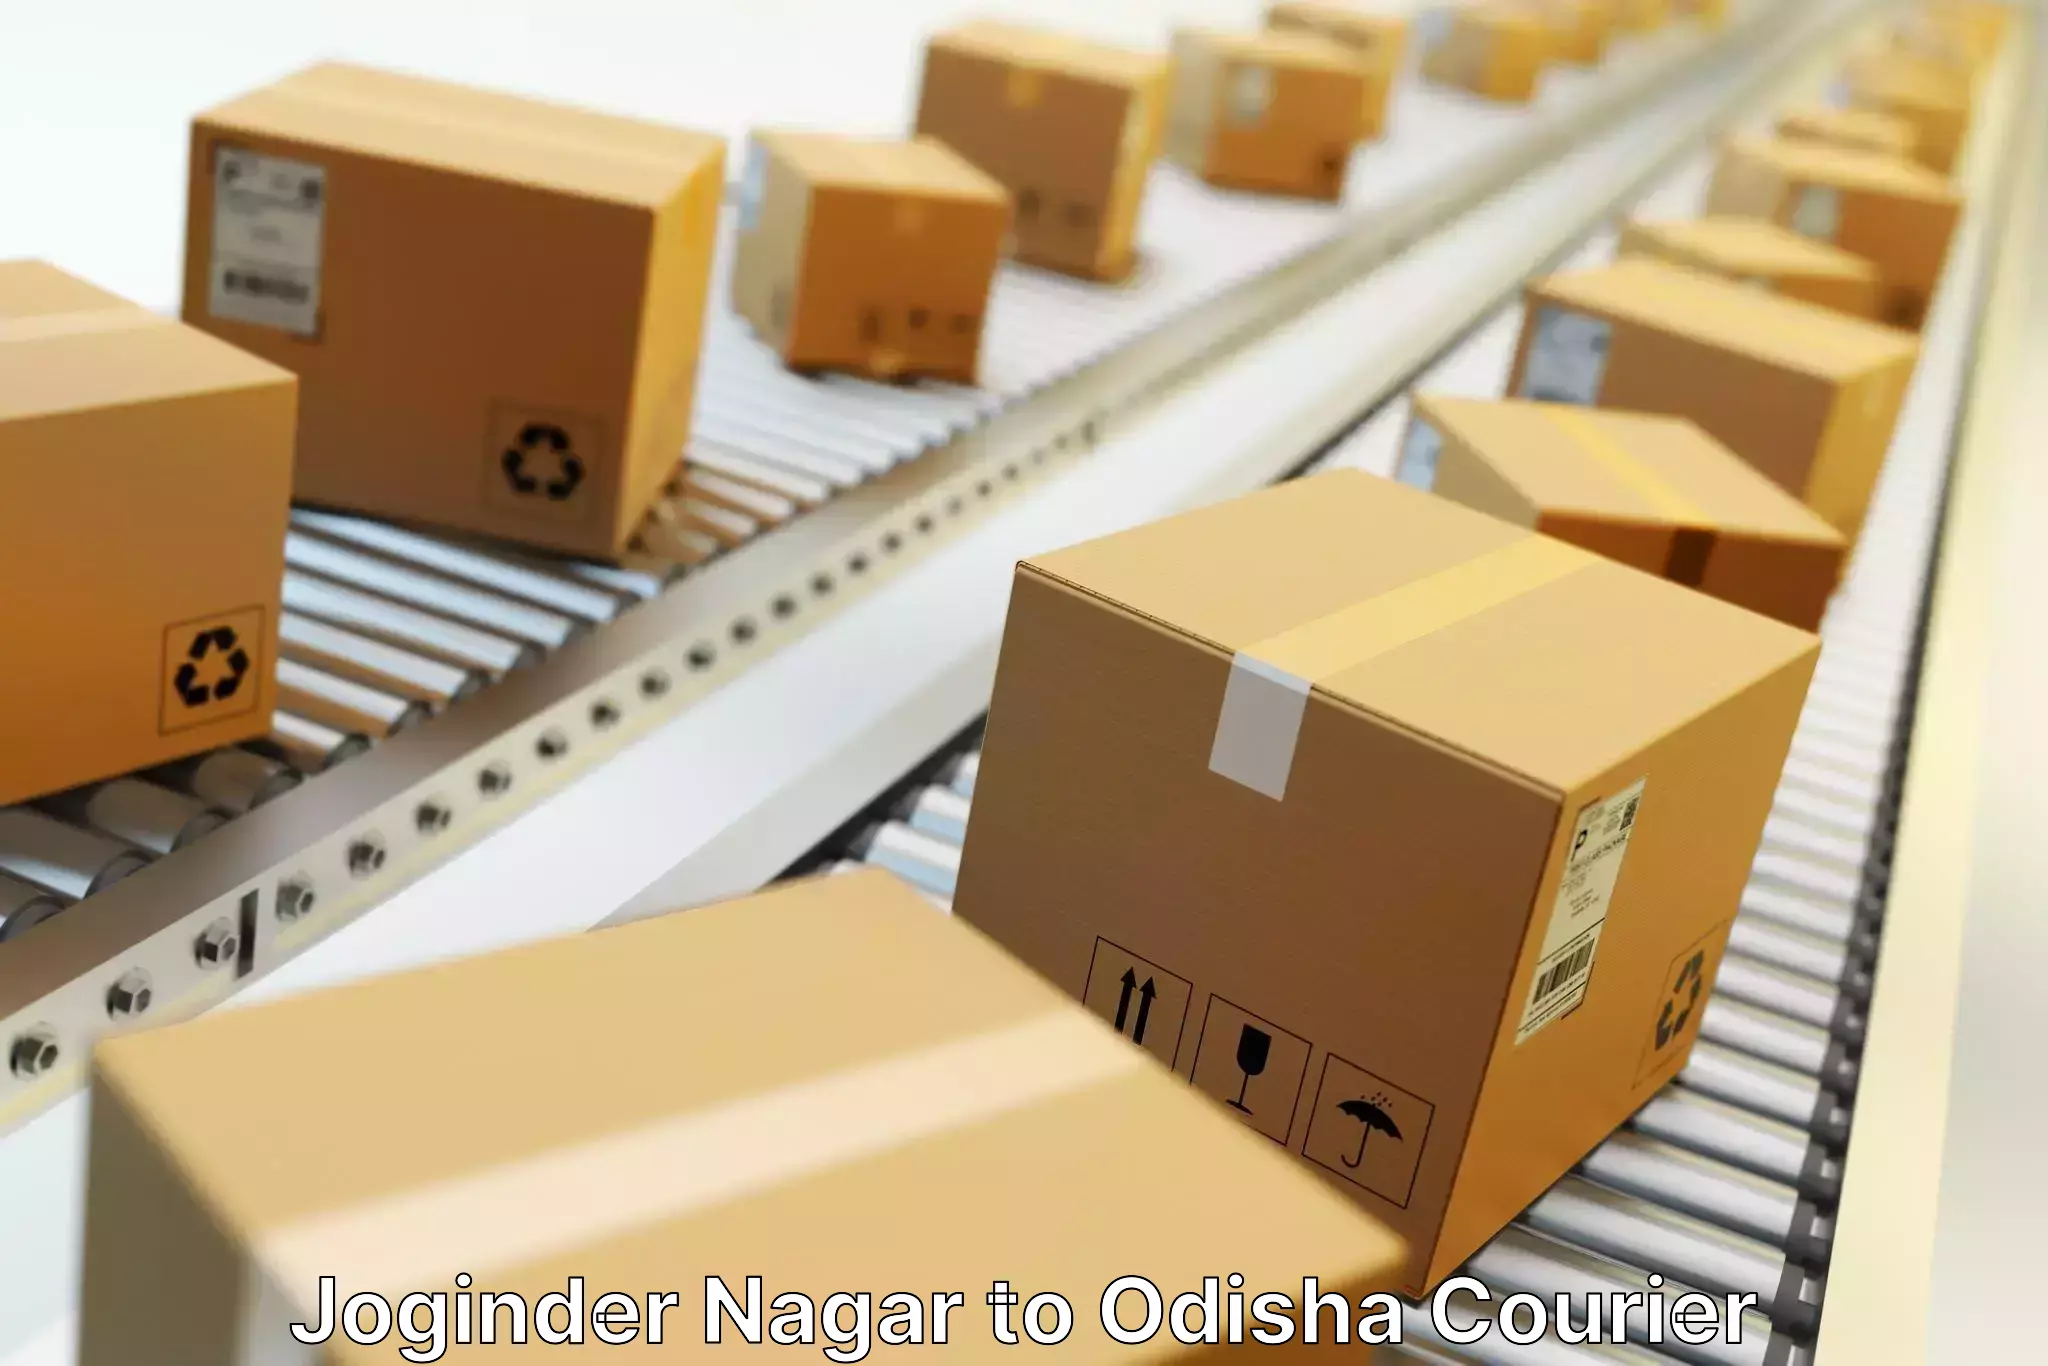 Large package courier Joginder Nagar to Udala